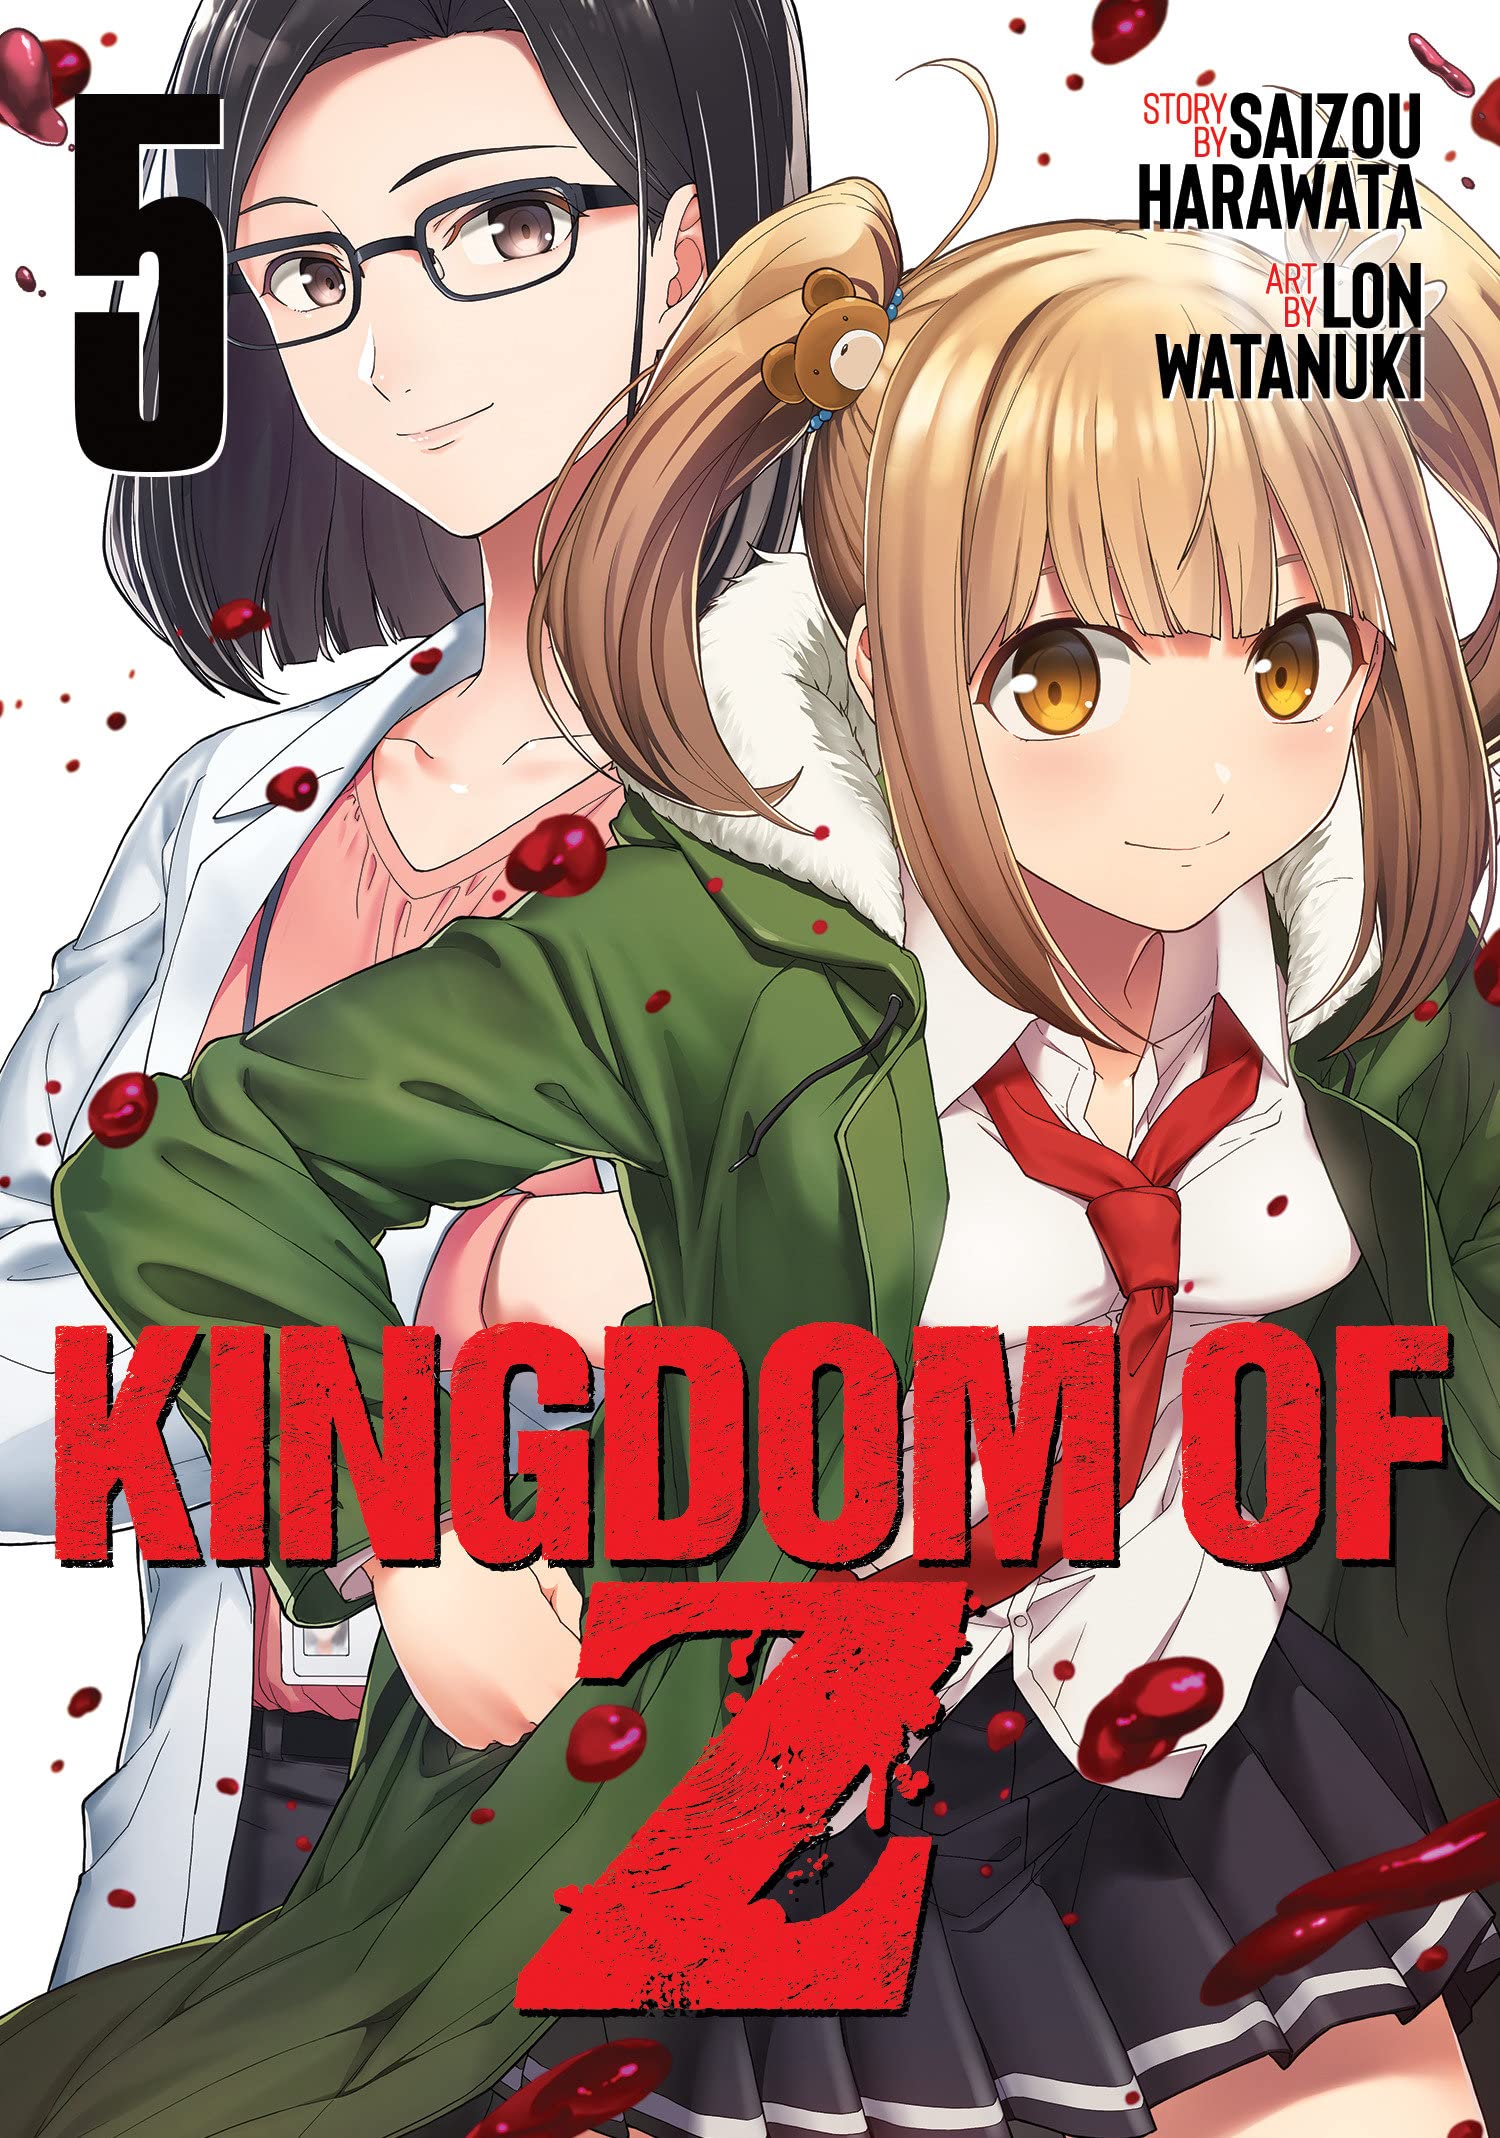 Kingdom of Z Vol. 05